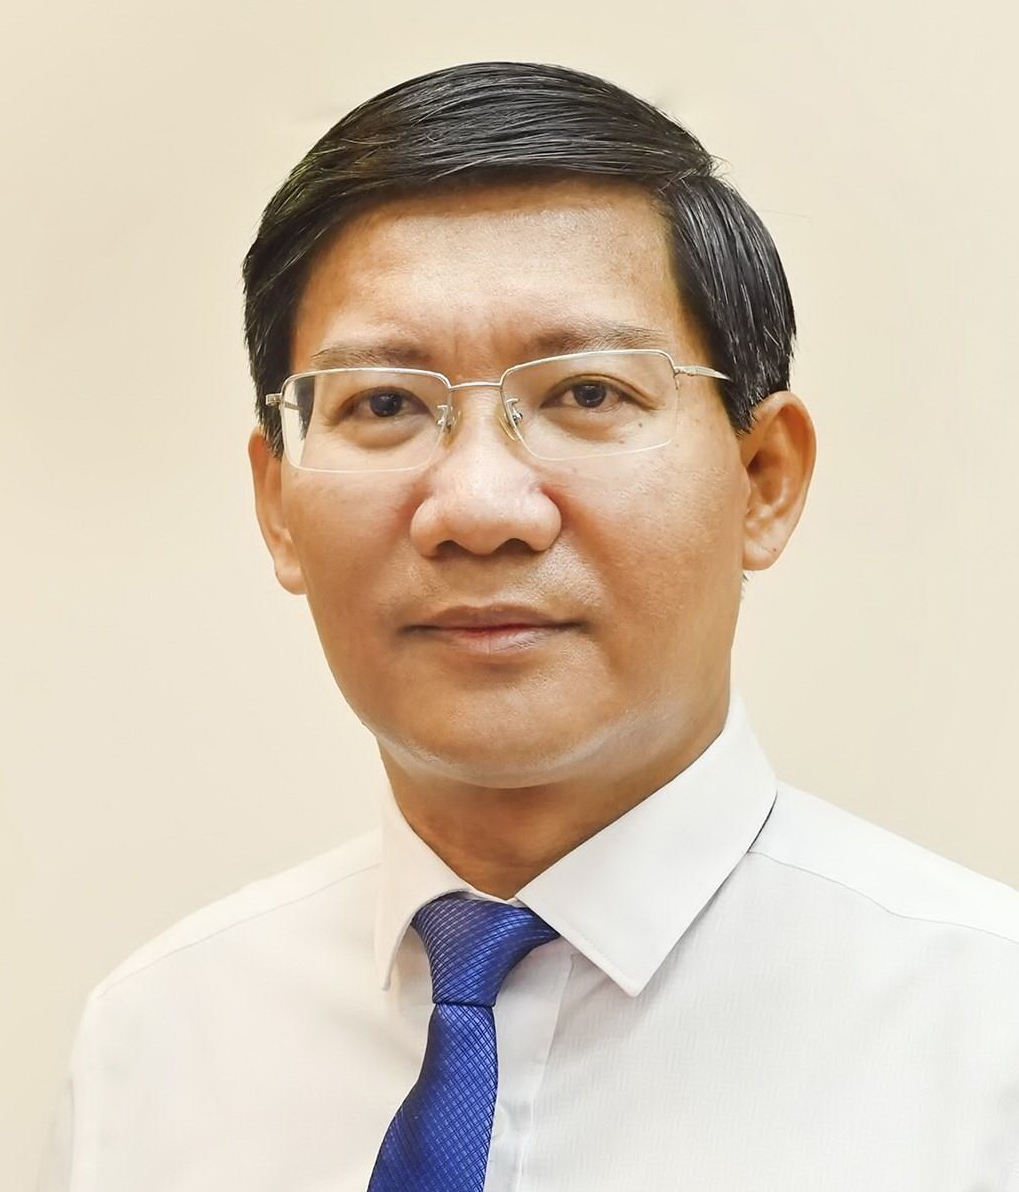 Tỉnh ủy Bình Thuận thông báo kỷ luật ông Lê Tuấn Phong - Chủ tịch UBND tỉnh Bình Thuận - Ảnh 1.